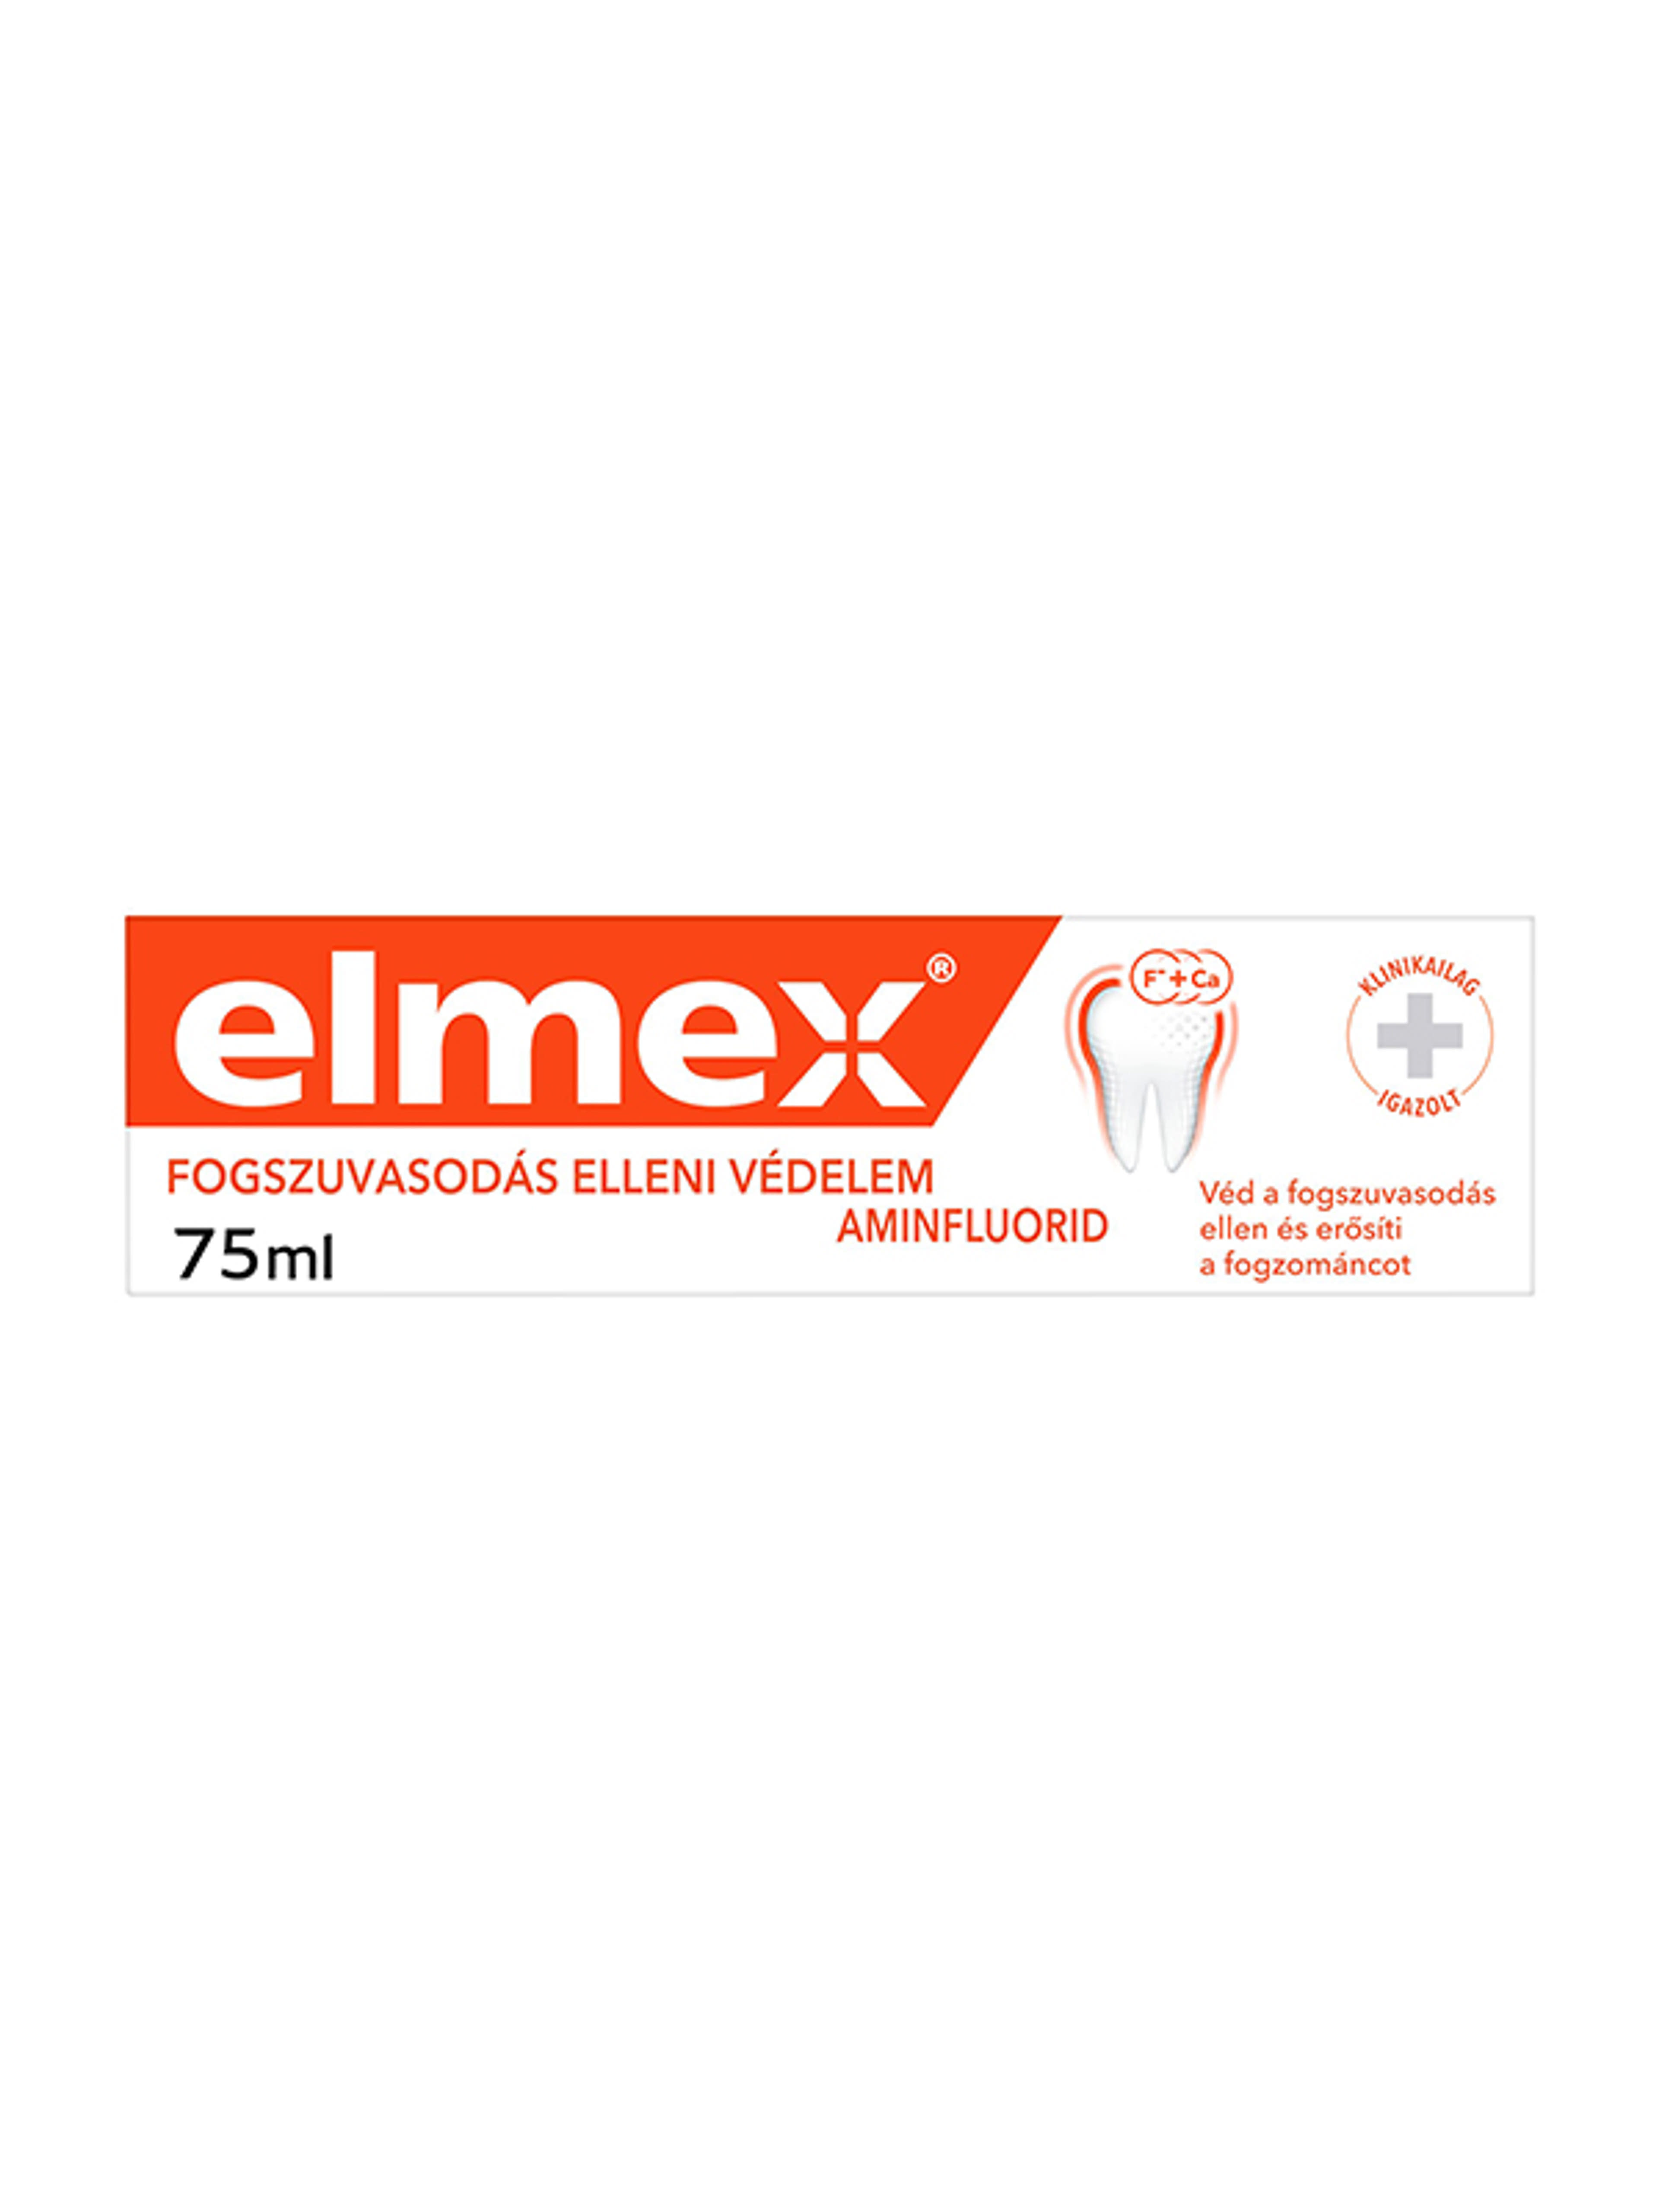 Elmex Caries Protection fogszuvasodás elleni fogkrém aminfluoriddal - 75 ml-6